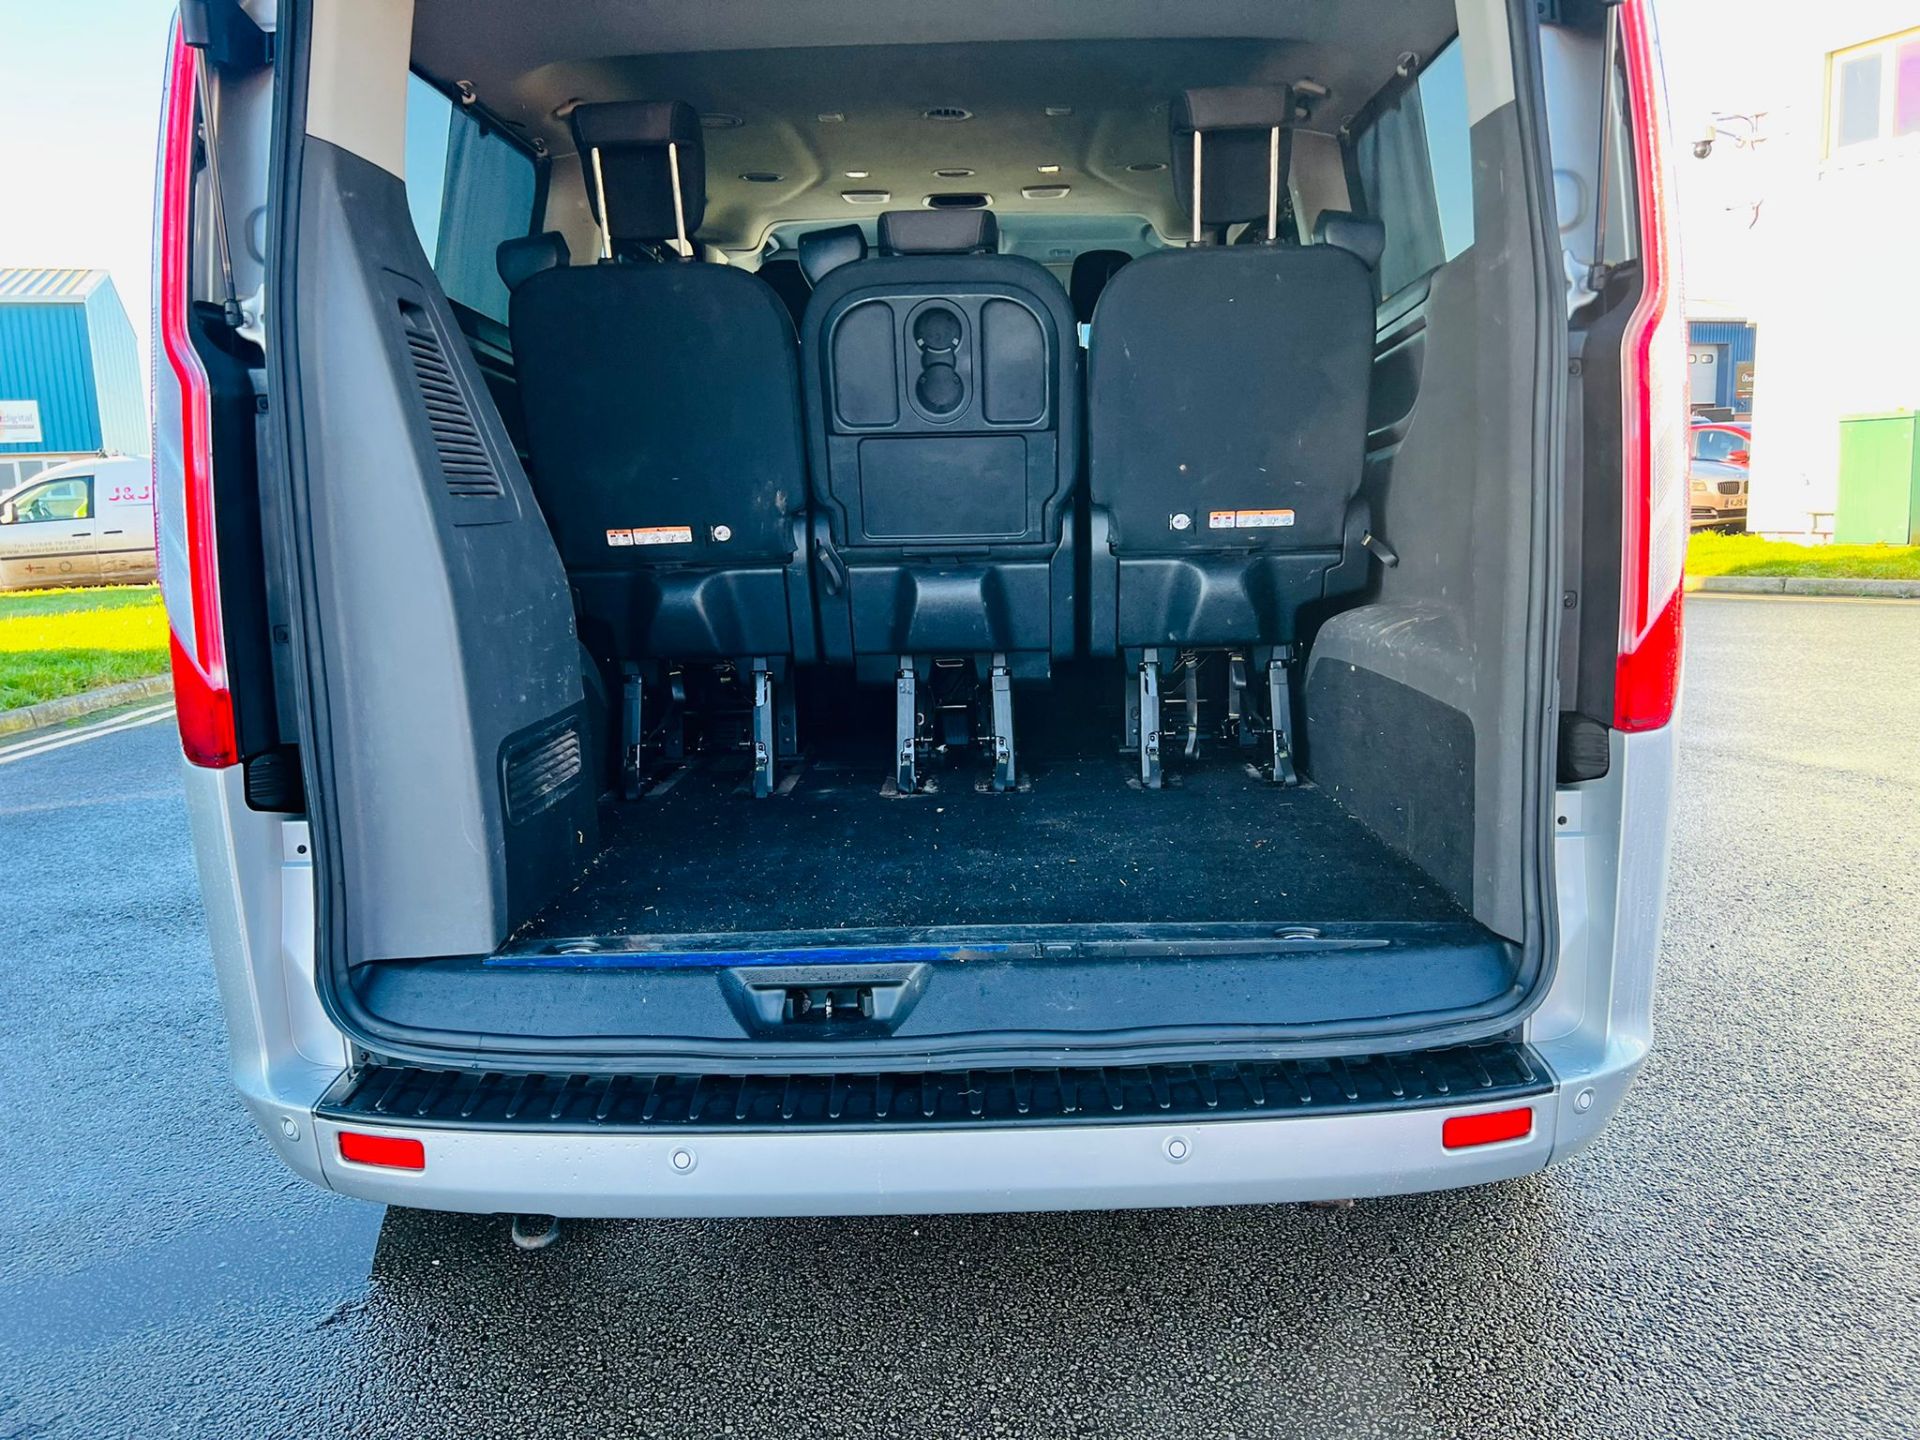 (Reserve Met) Ford Transit Custom 310 130 2.0 Tdci Titanium 9 Seater MiniBus 2019 Model - Air Con - - Image 19 of 36